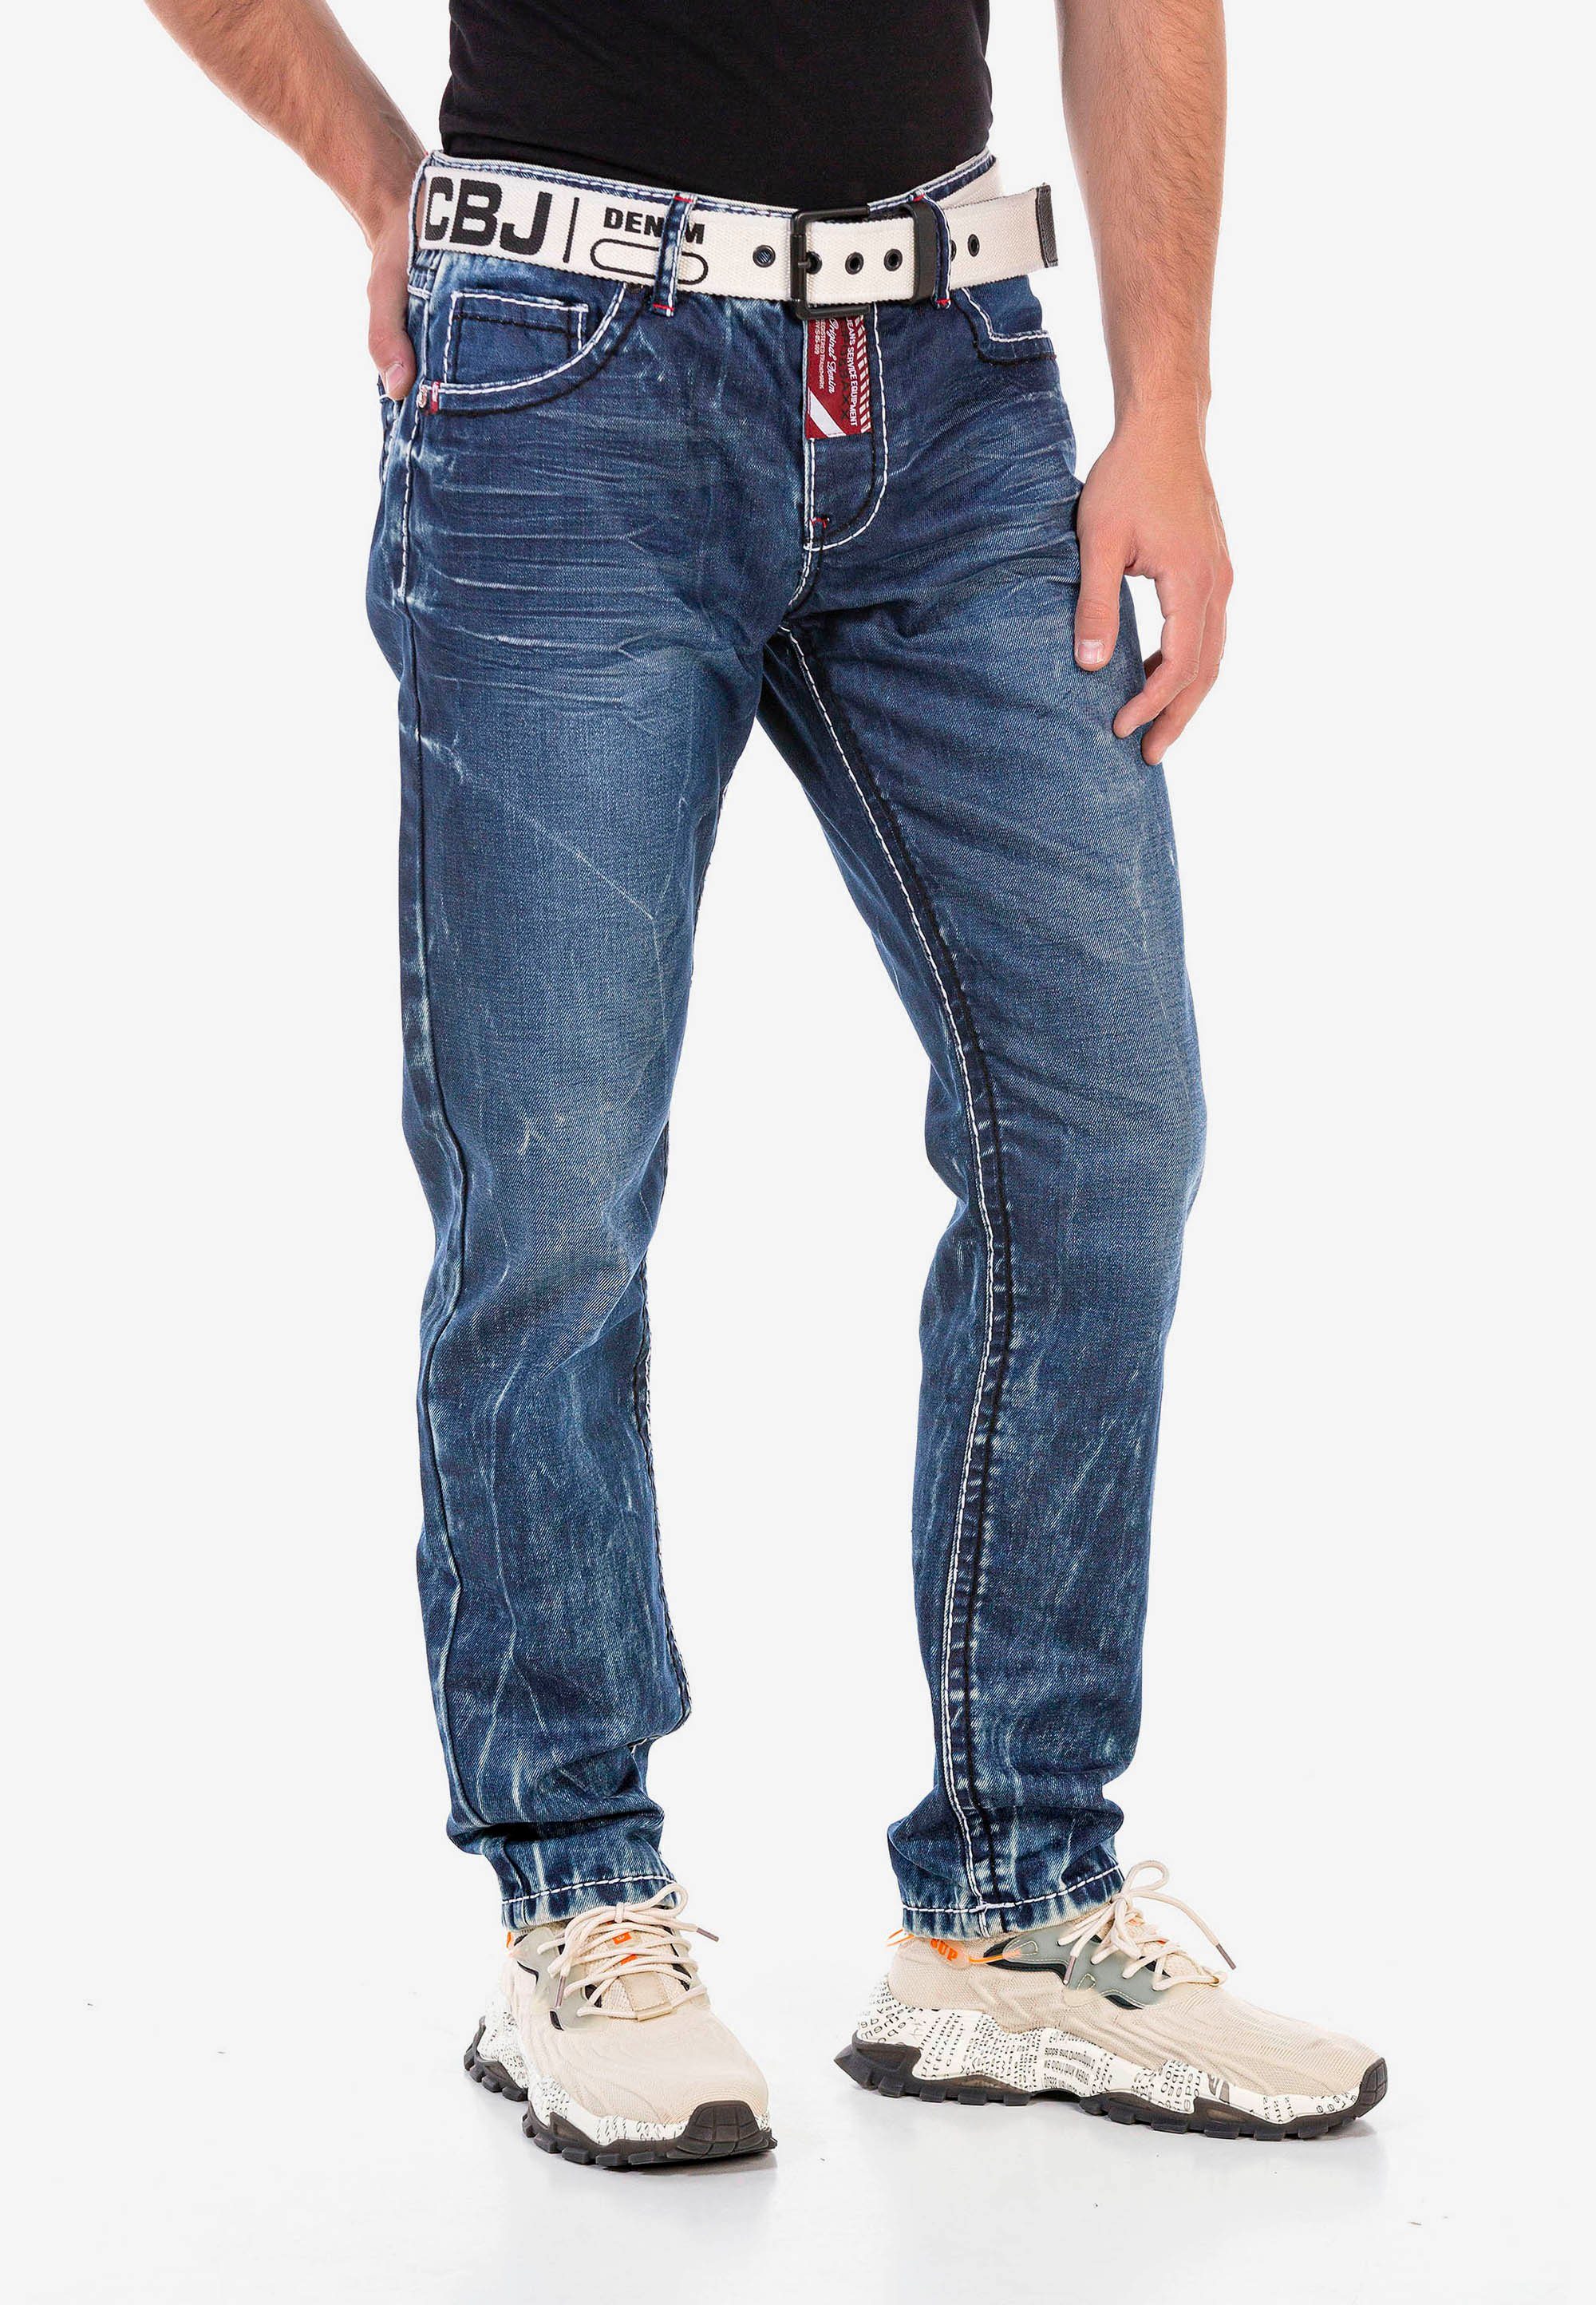 Waschung Cipo Straight-Jeans & Baxx extravaganter mit